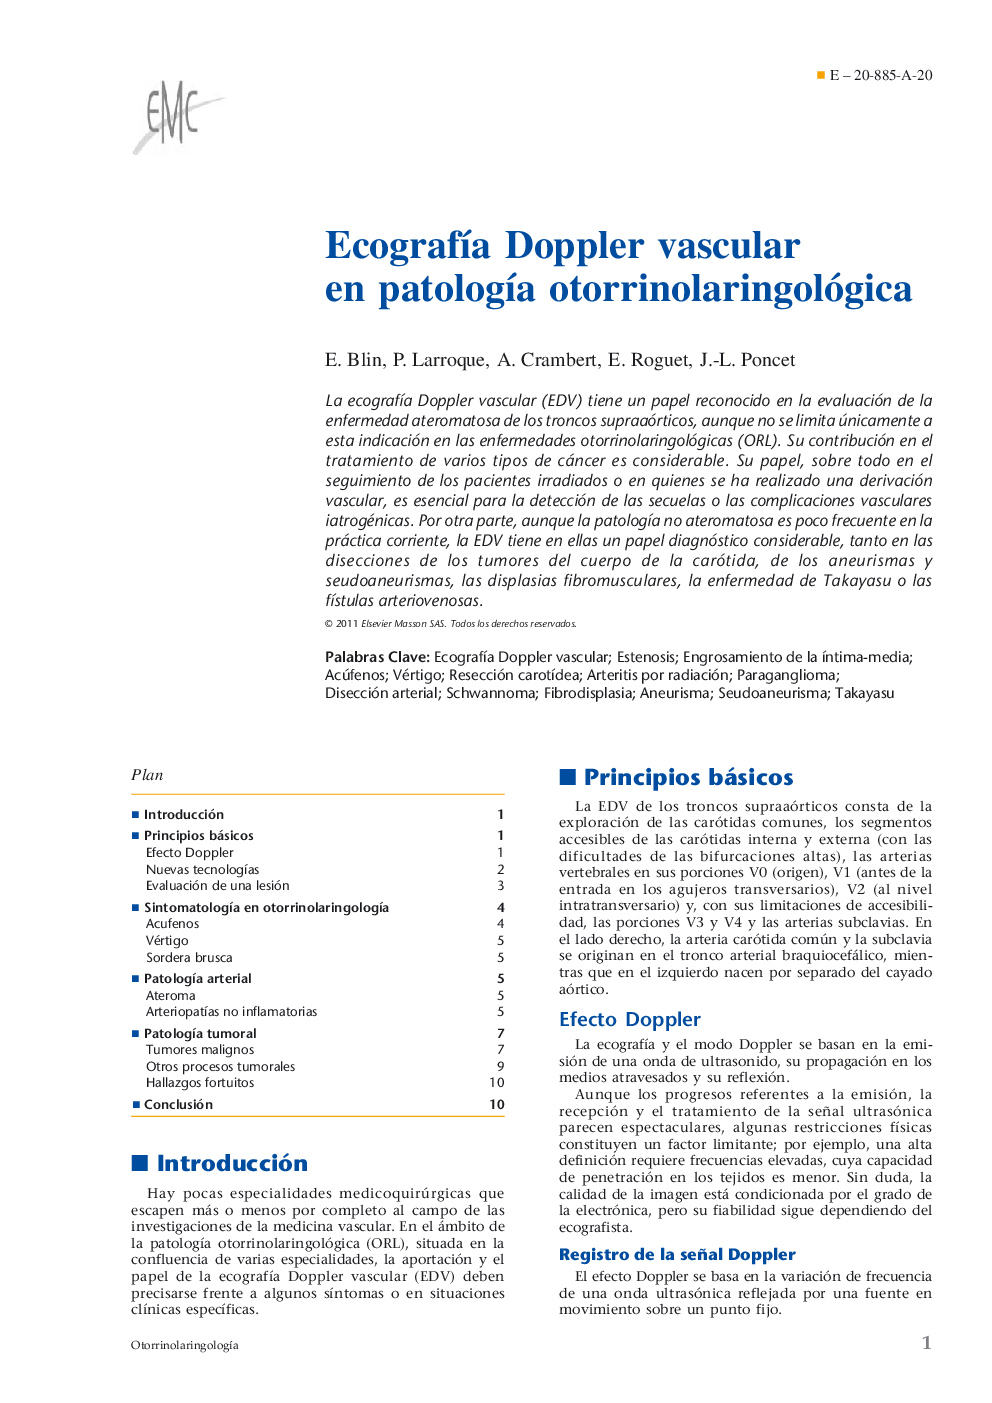 Ecografía Doppler vascular en patología otorrinolaringológica